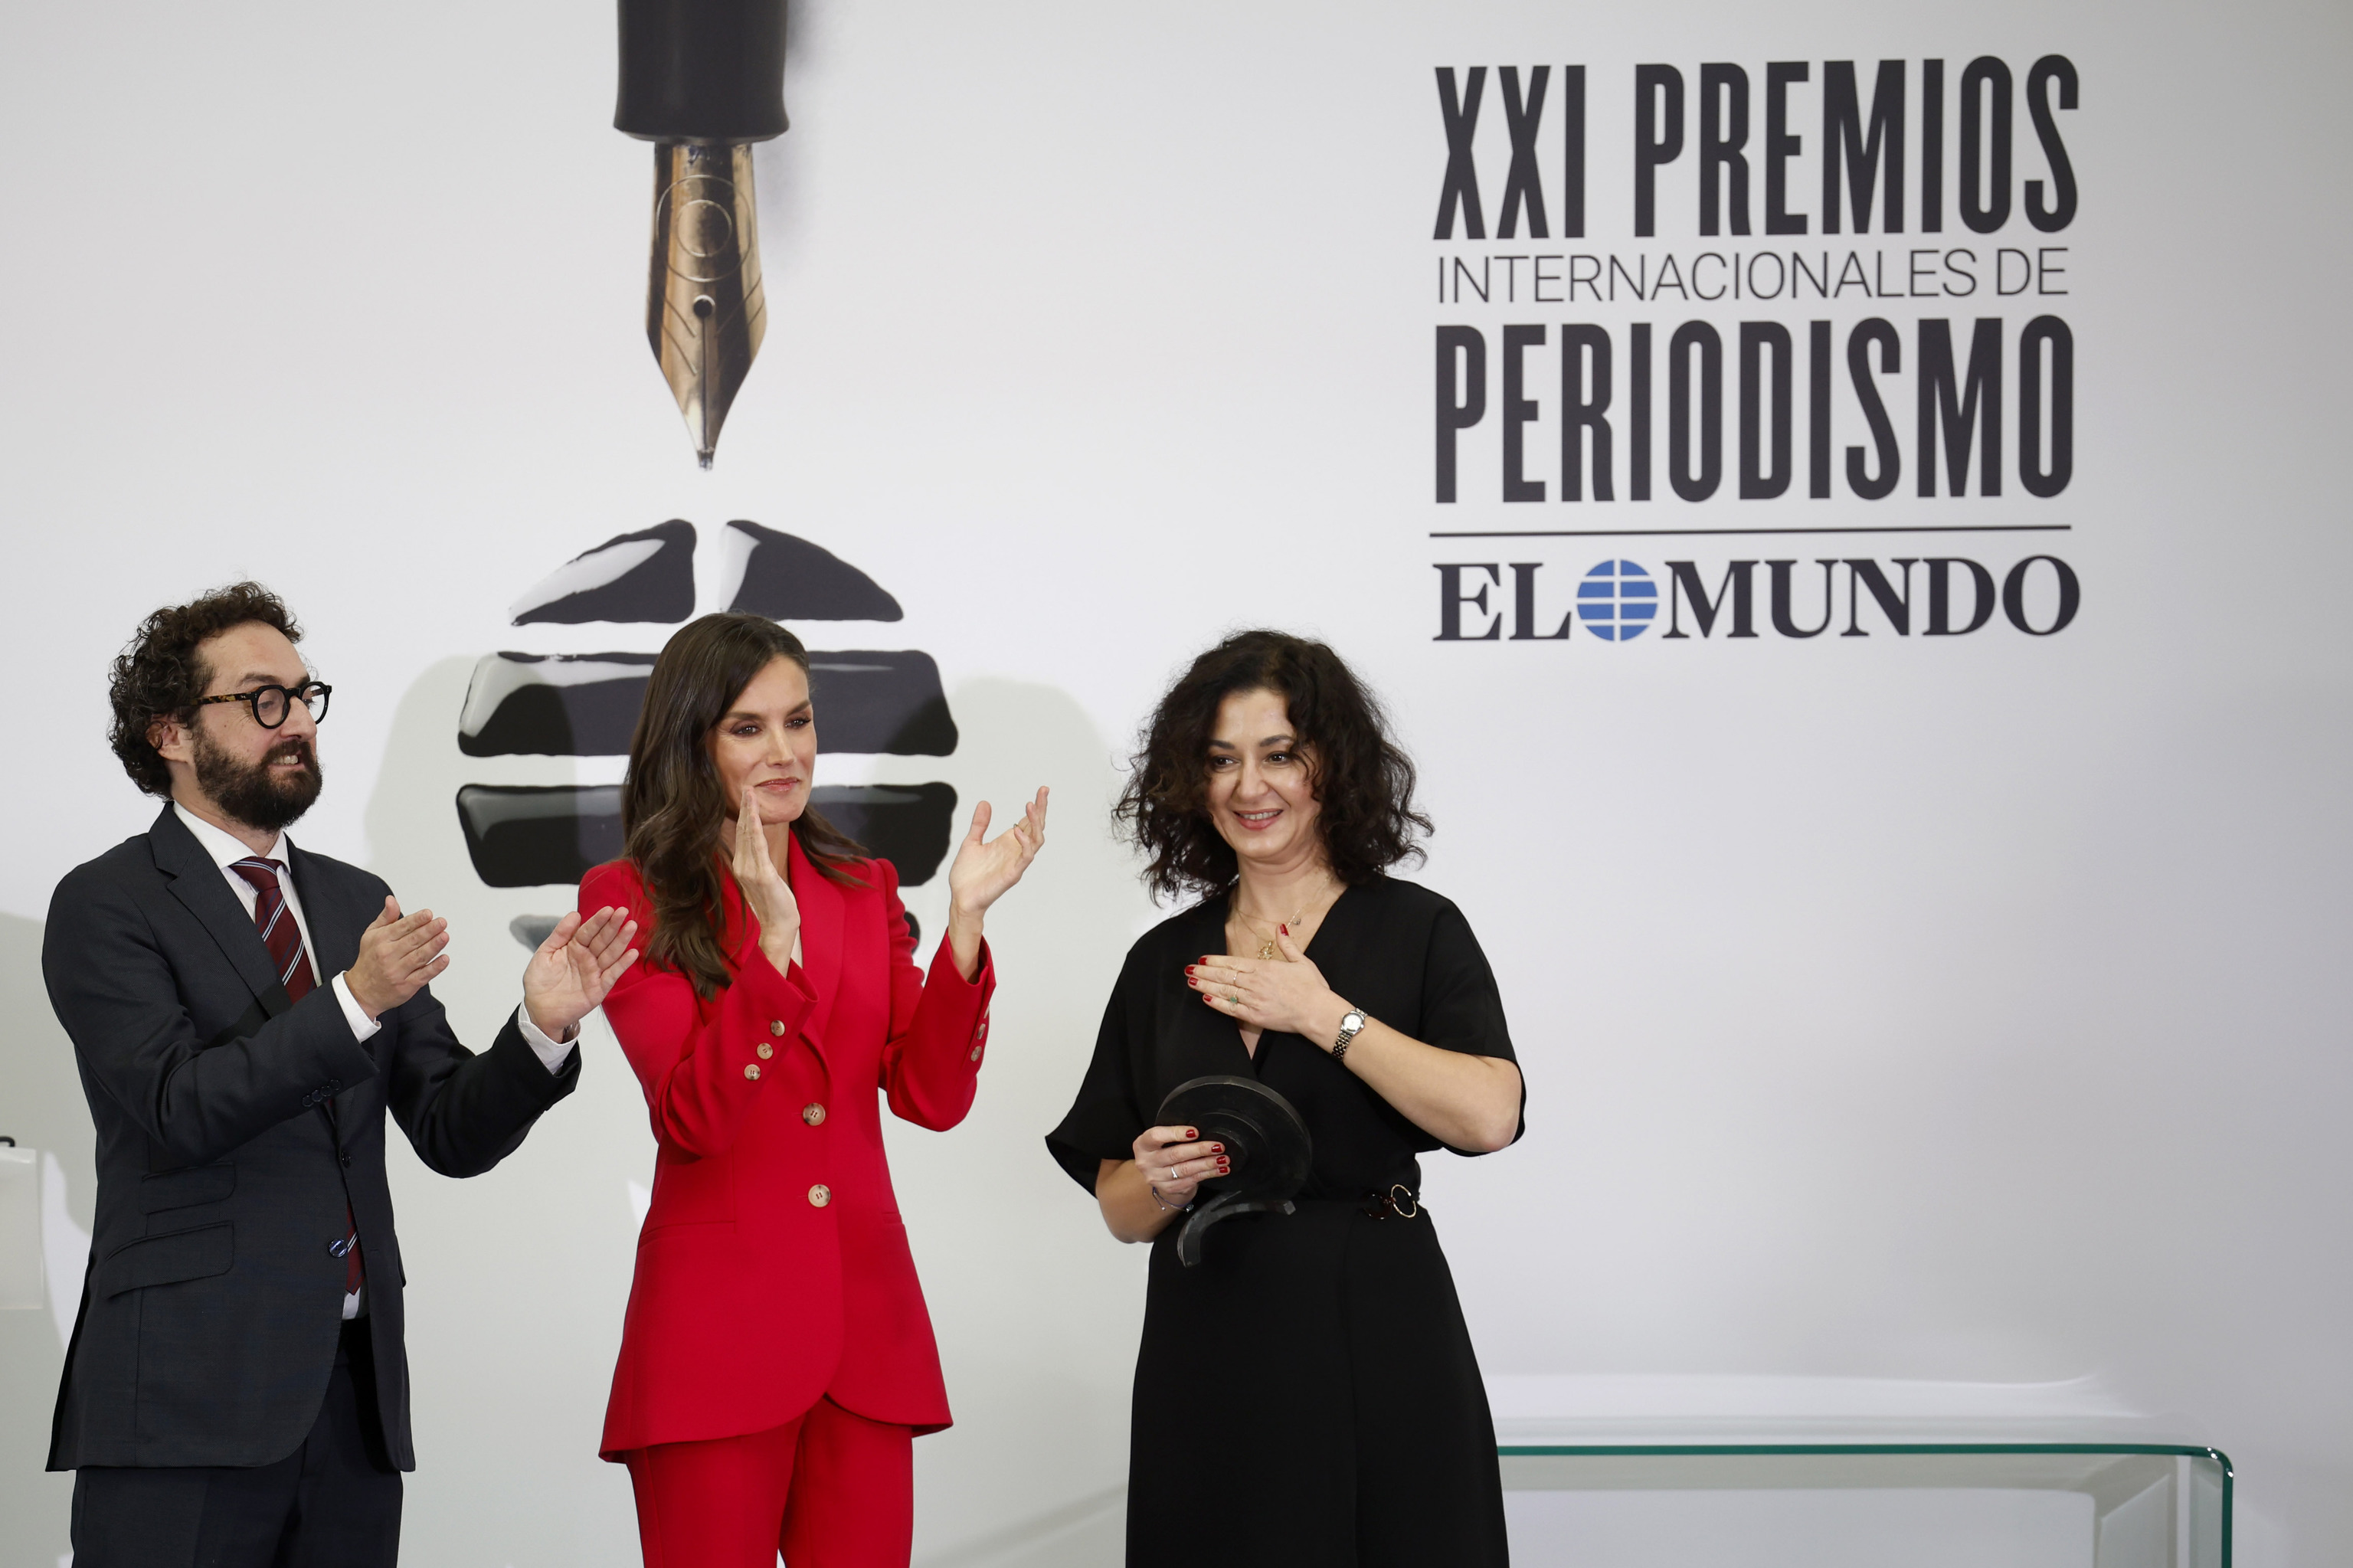 La Reina Letizia y Joaqun Manso entregan el premio a Ece Temelkuran.